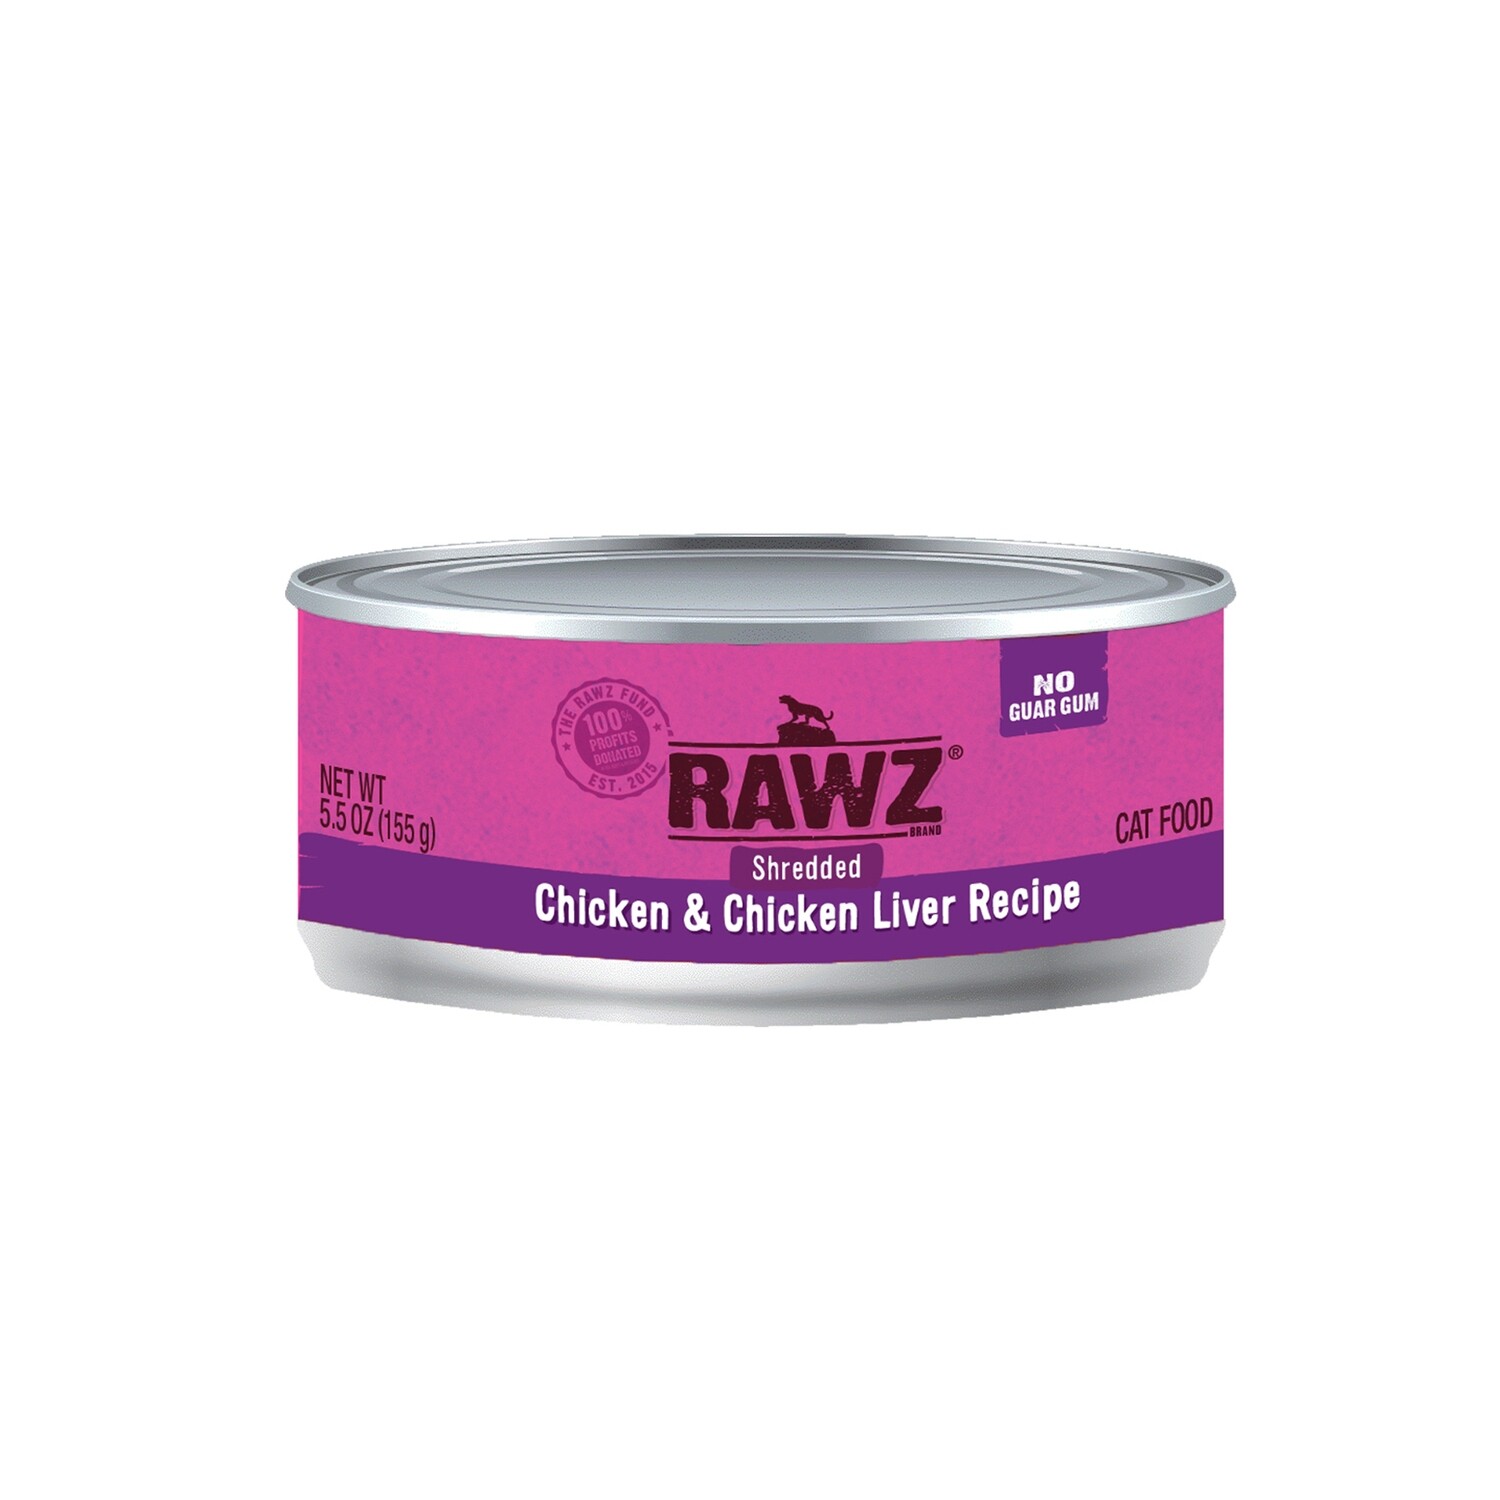 RAWZ Shredded Chicken&Chicken Liver Wet Cat Can-5.5oz - 鸡丝鸡肝湿猫粮罐头